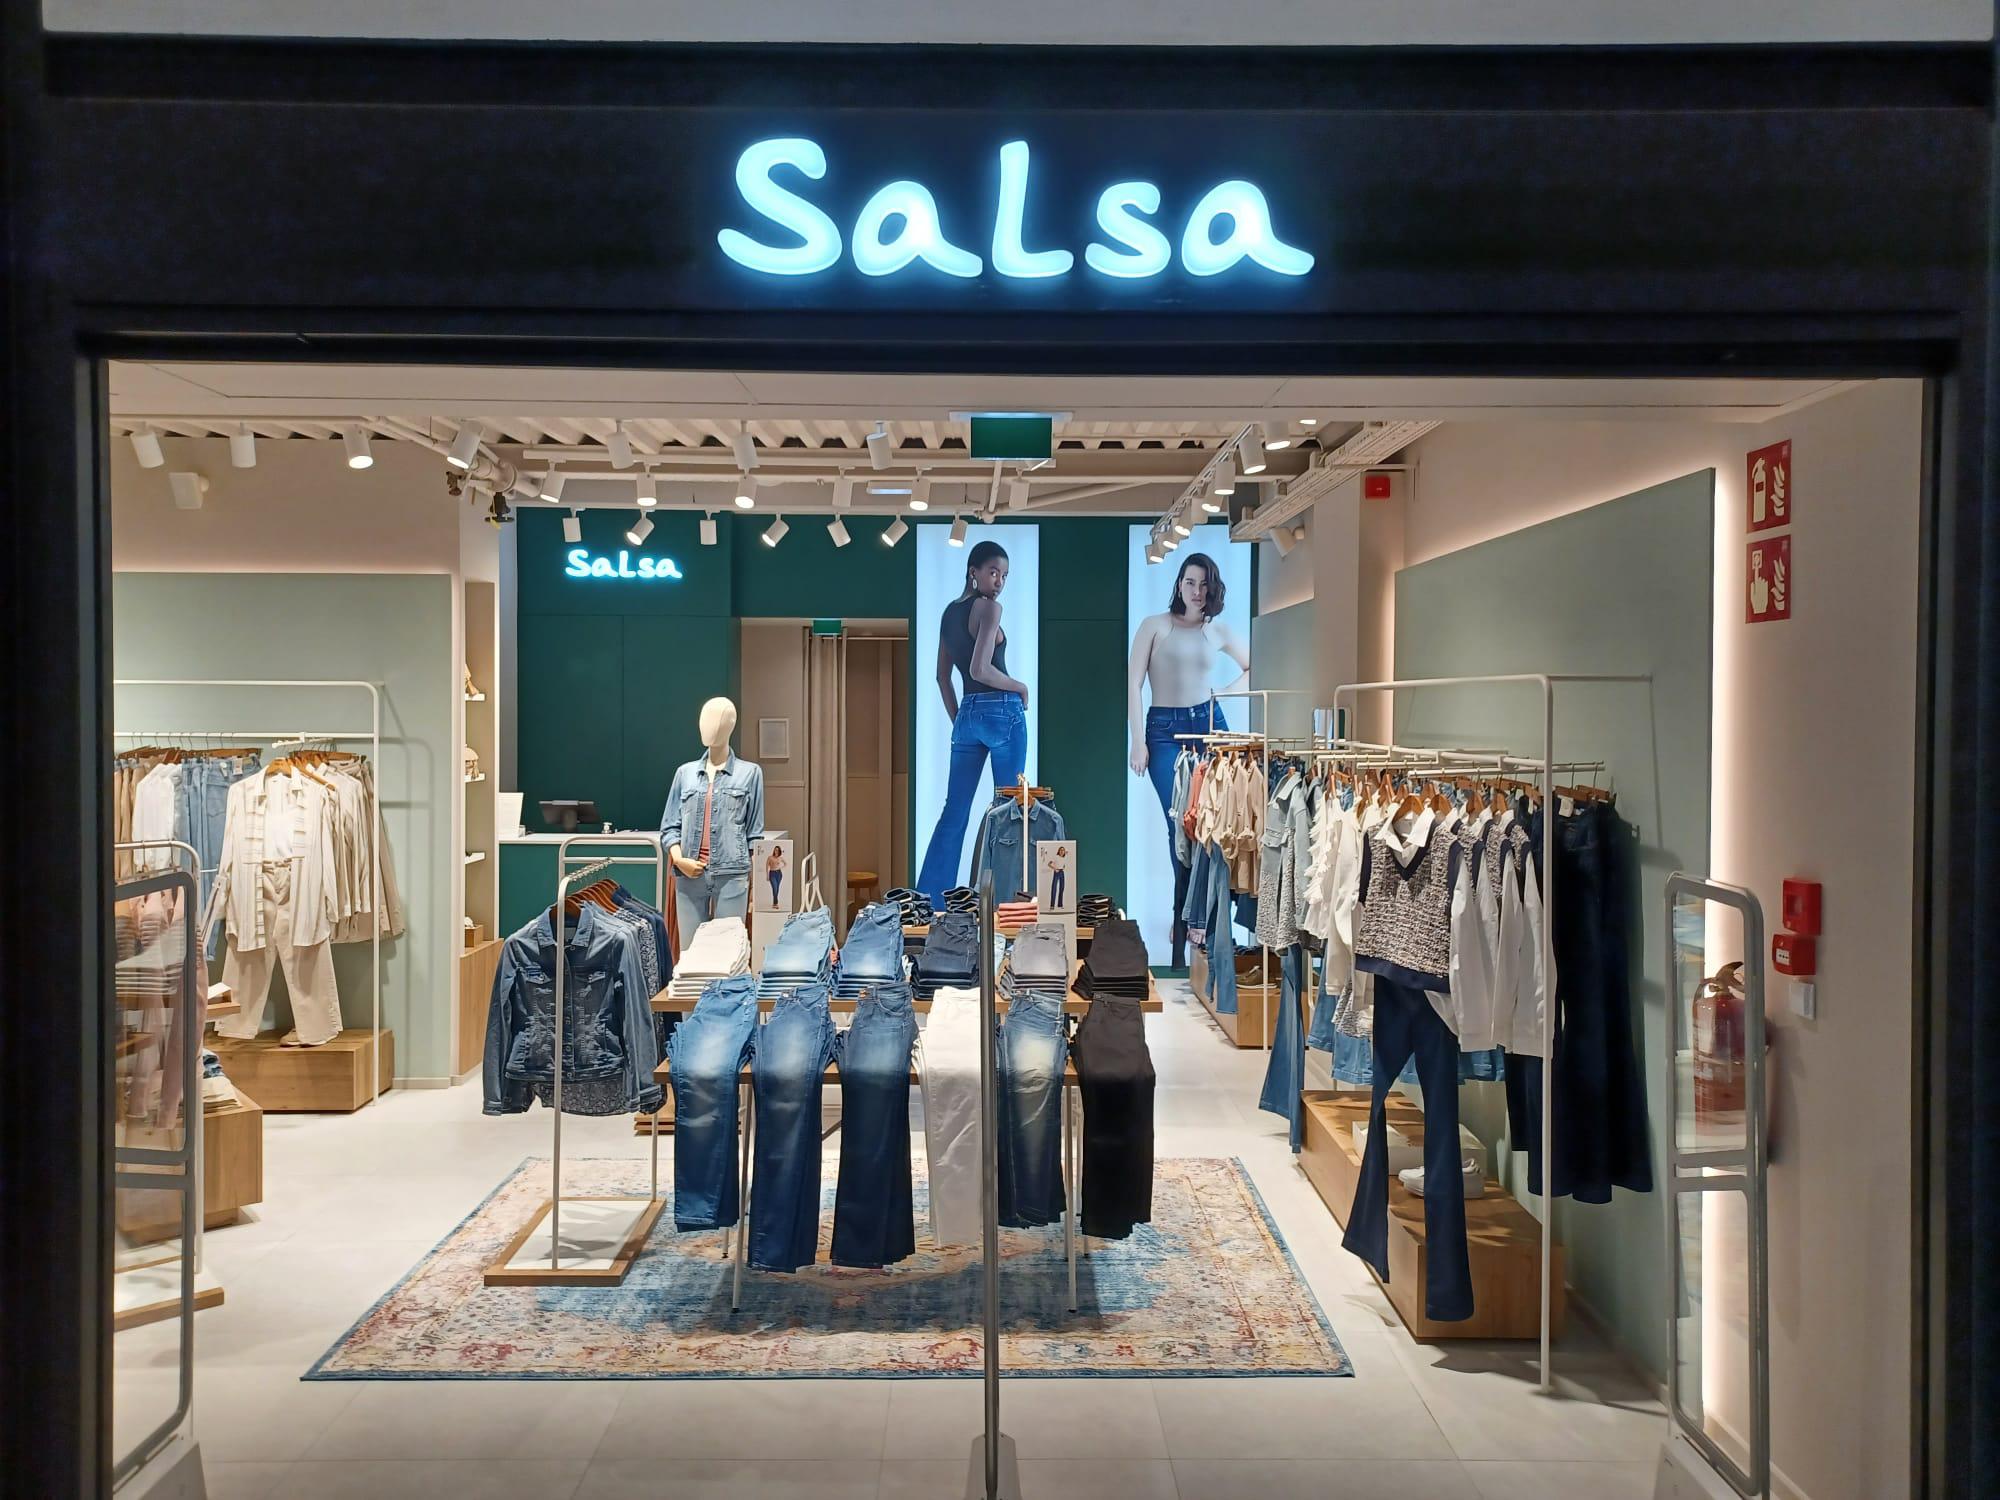 Salsa refuerza su posicionamiento en Cataluña con la apertura de una nueva tienda en Tarragona